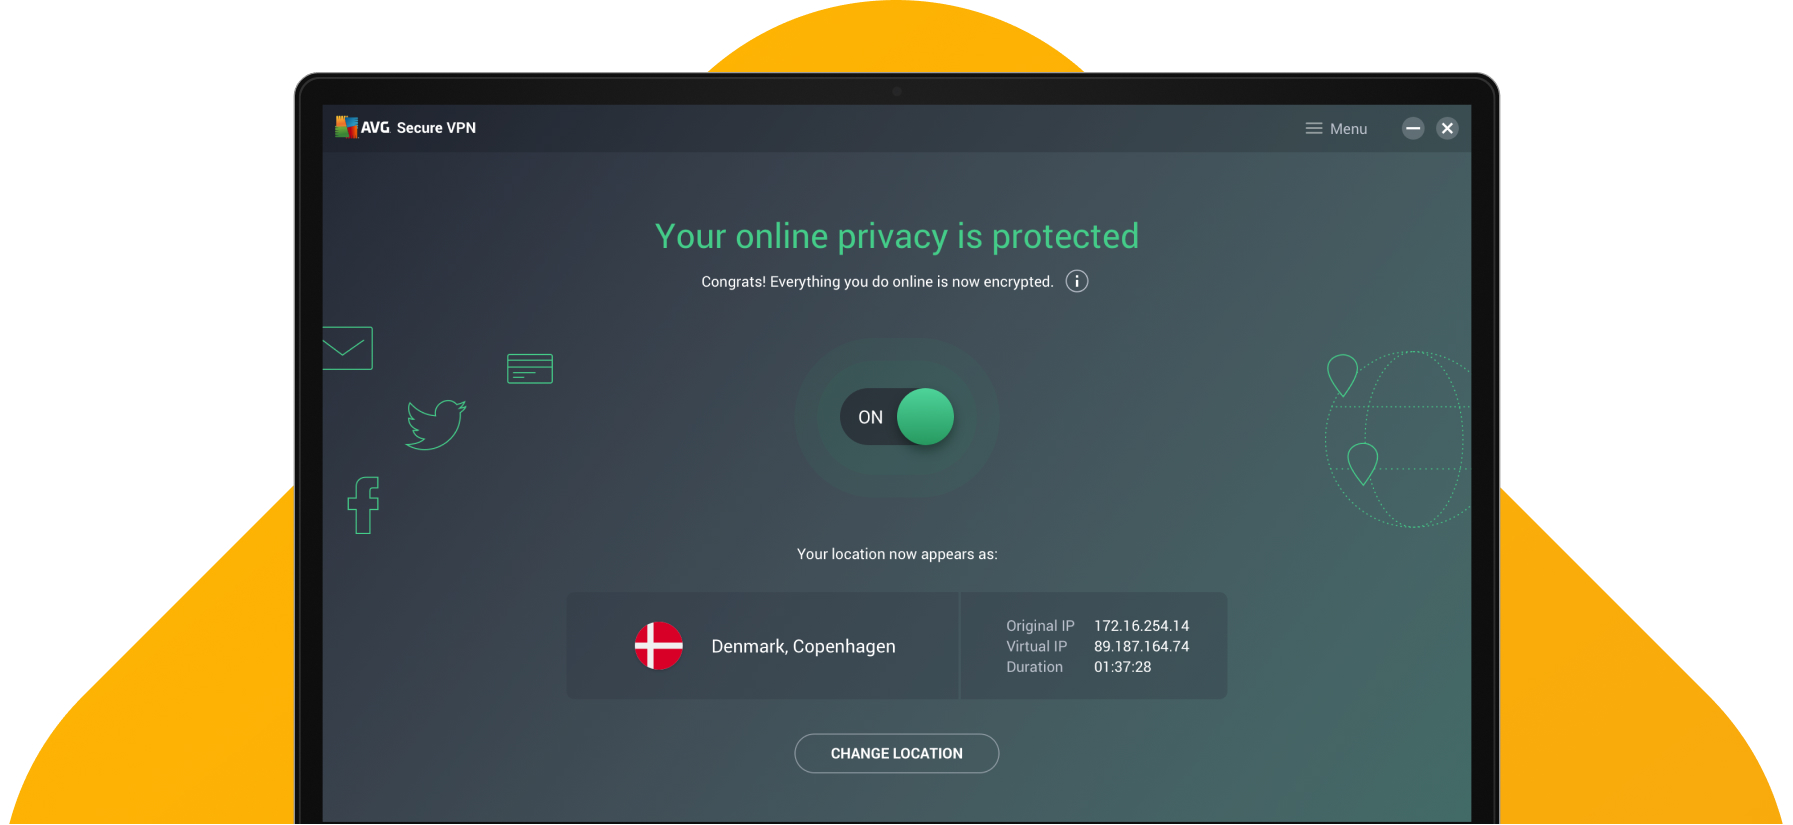 Is Secure VPN free?